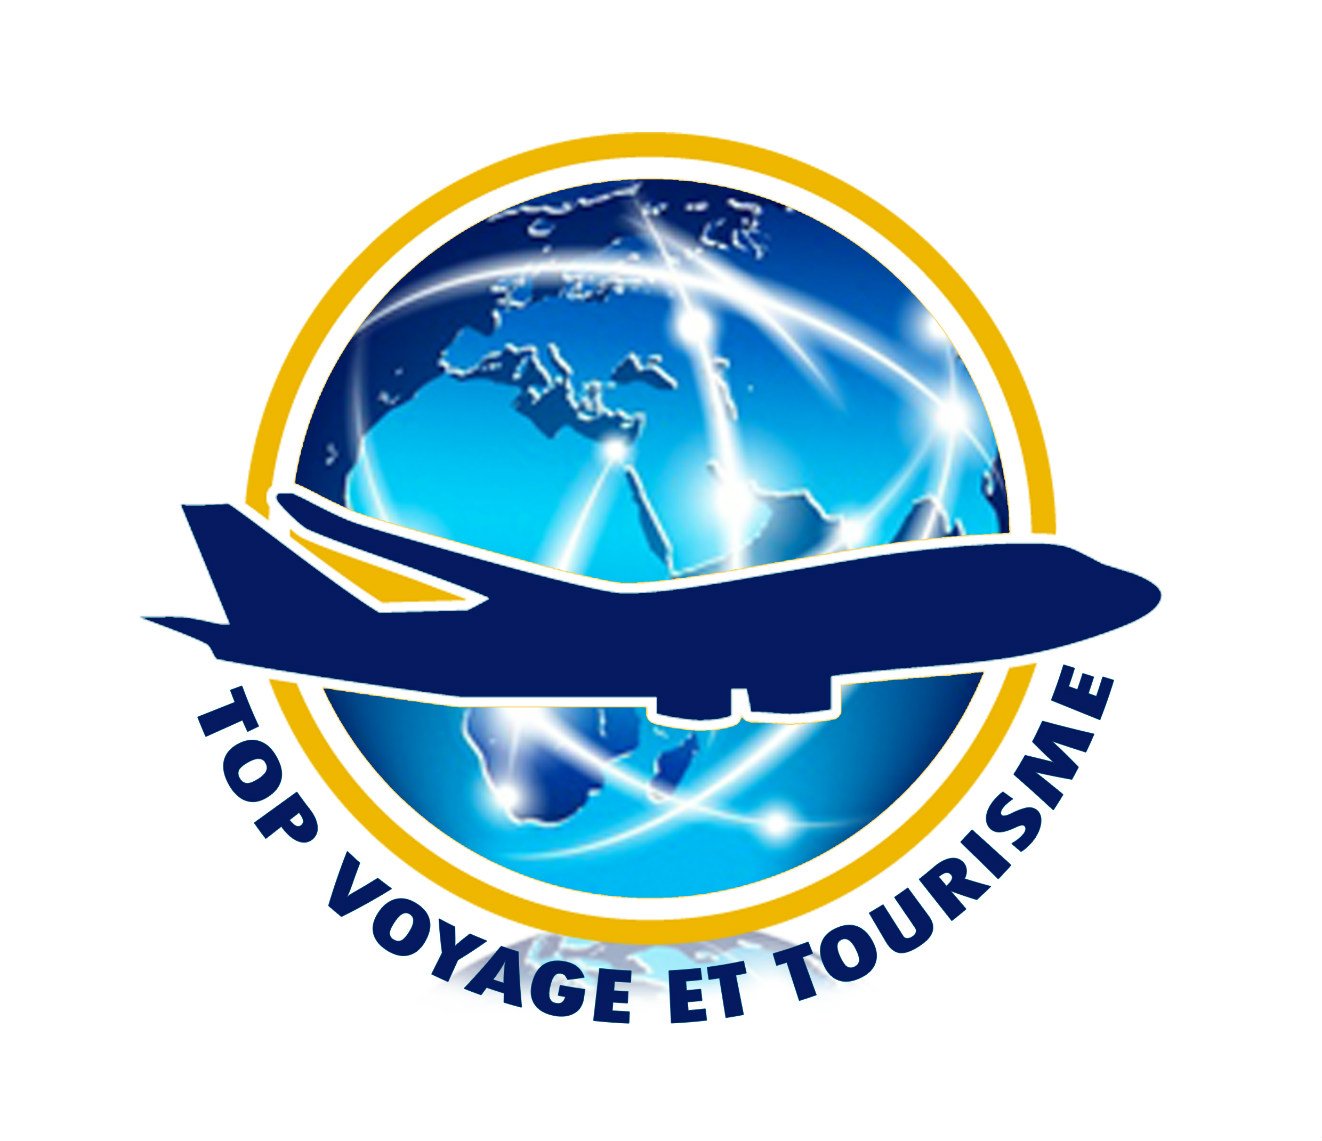 Agence de Voyages specialisée dans : 
- Vente Billets d'Avions...
- Tourisme ...
- Cargo...